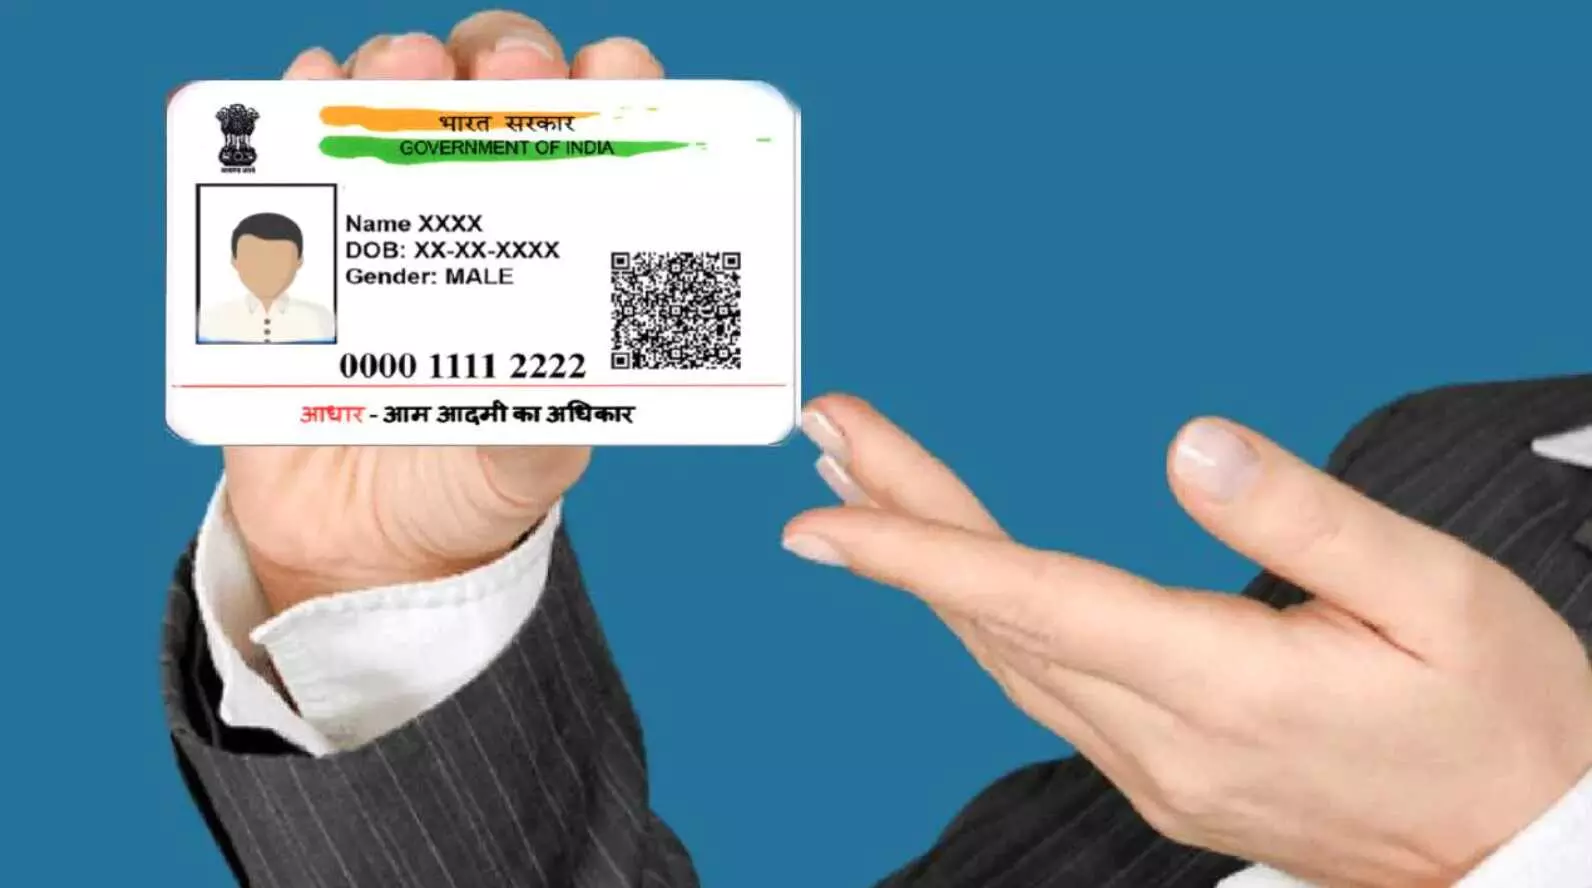 Aadhar Card: आधार कार्ड शेयर करने को लेकर सरकार ने जारी की नई एडवाइजरी, पढ़ लीजिए जरुरी खबर है